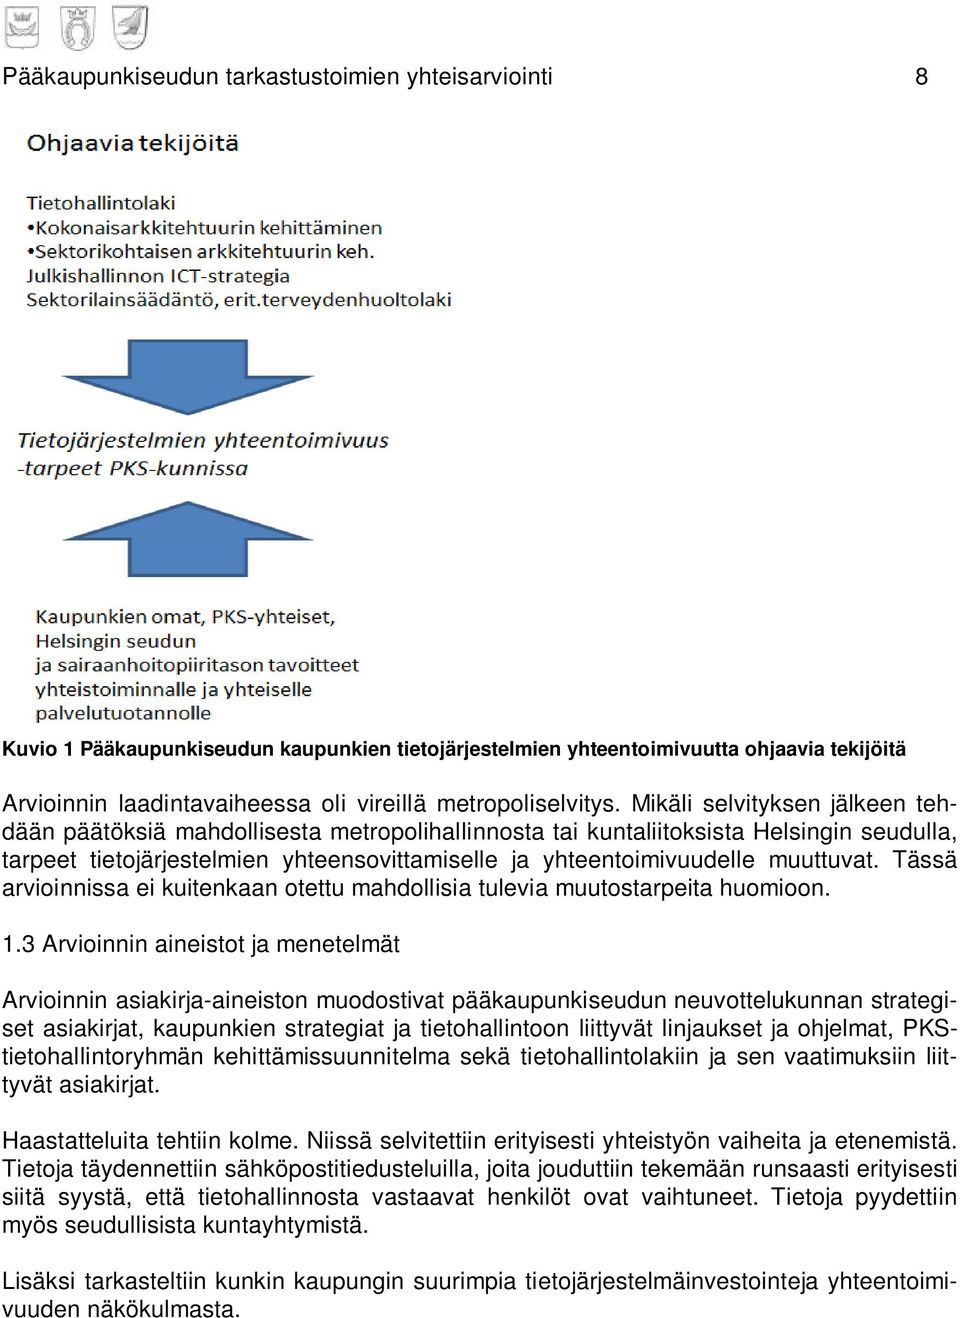 Mikäli selvityksen jälkeen tehdään päätöksiä mahdollisesta metropolihallinnosta tai kuntaliitoksista Helsingin seudulla, tarpeet tietojärjestelmien yhteensovittamiselle ja yhteentoimivuudelle